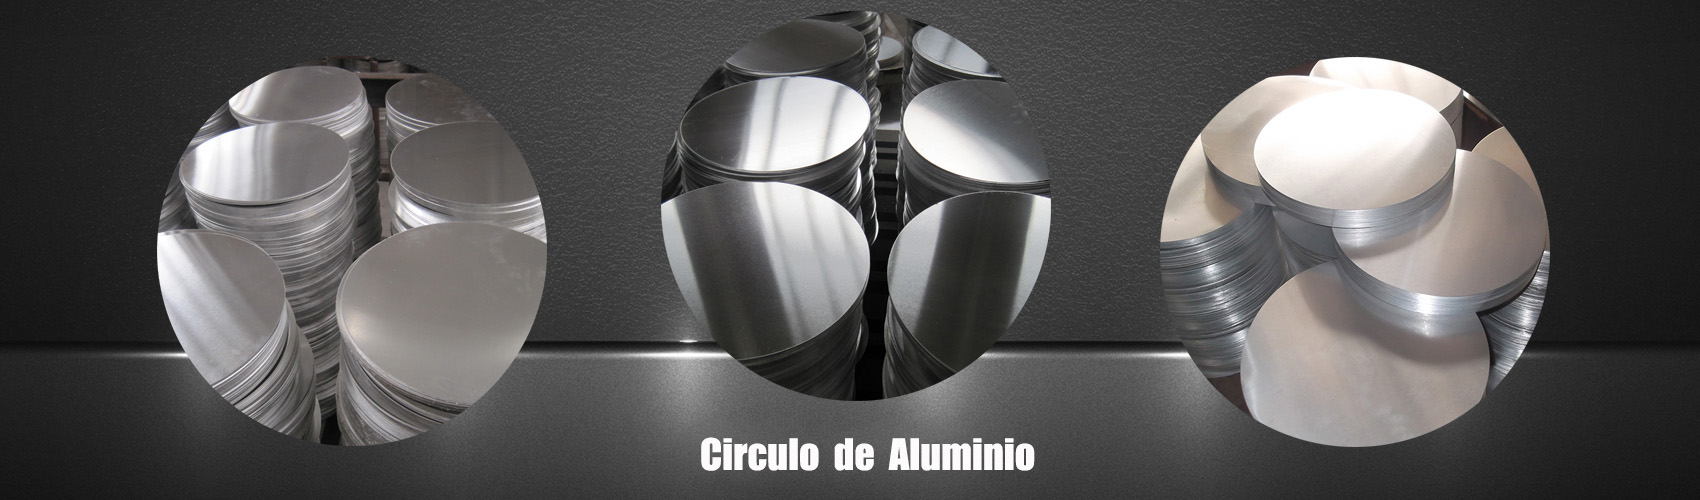 circulo de aluminio